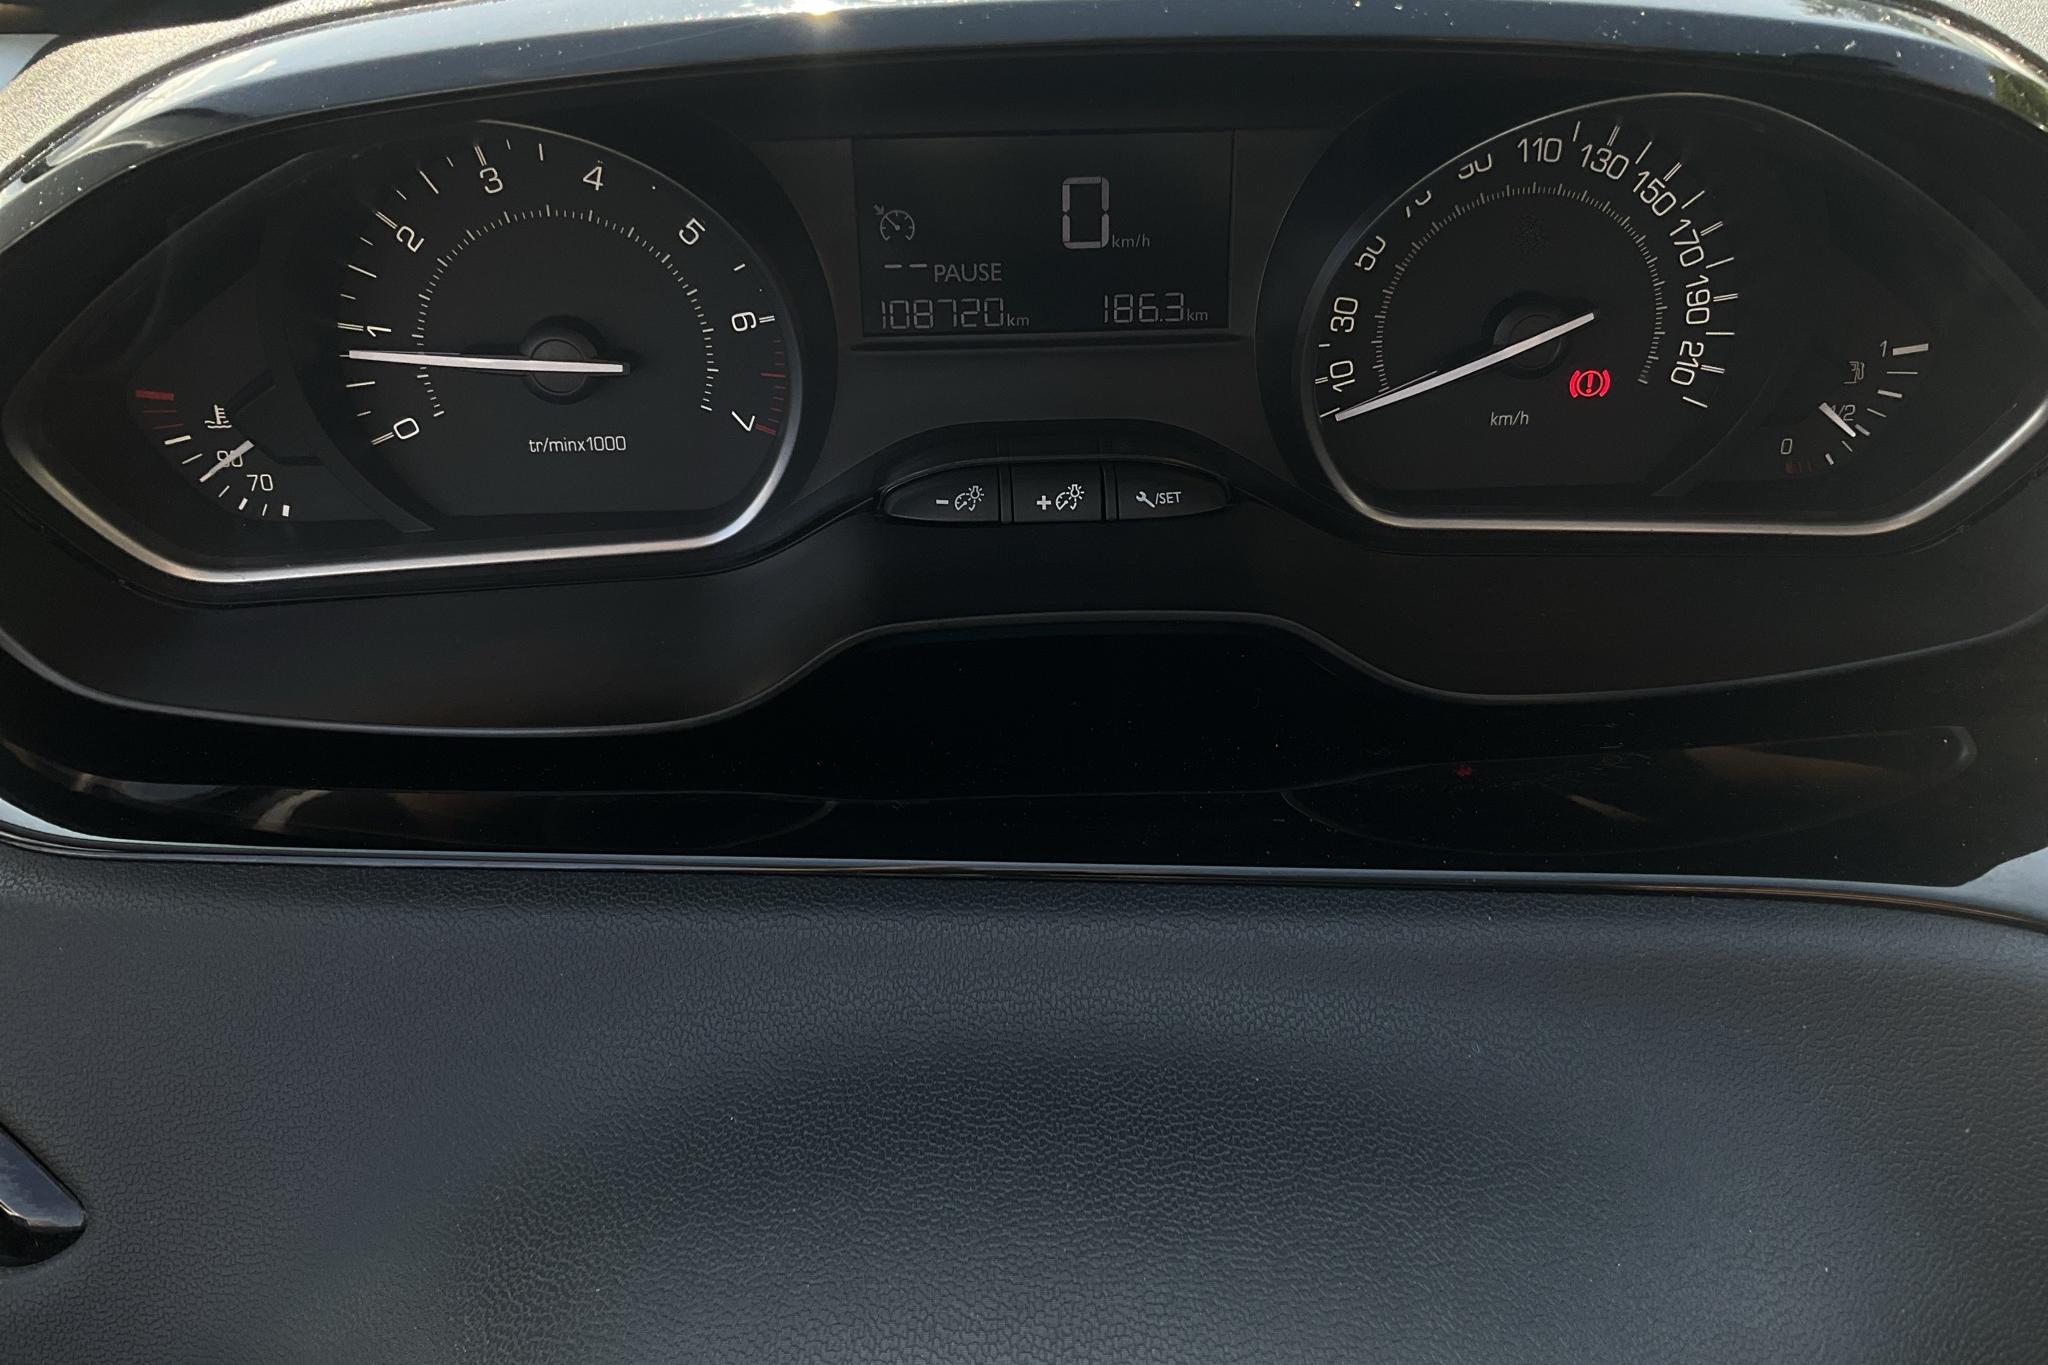 Peugeot 208 PureTech 5dr (82hk) - 108 720 km - Manual - Dark Grey - 2016